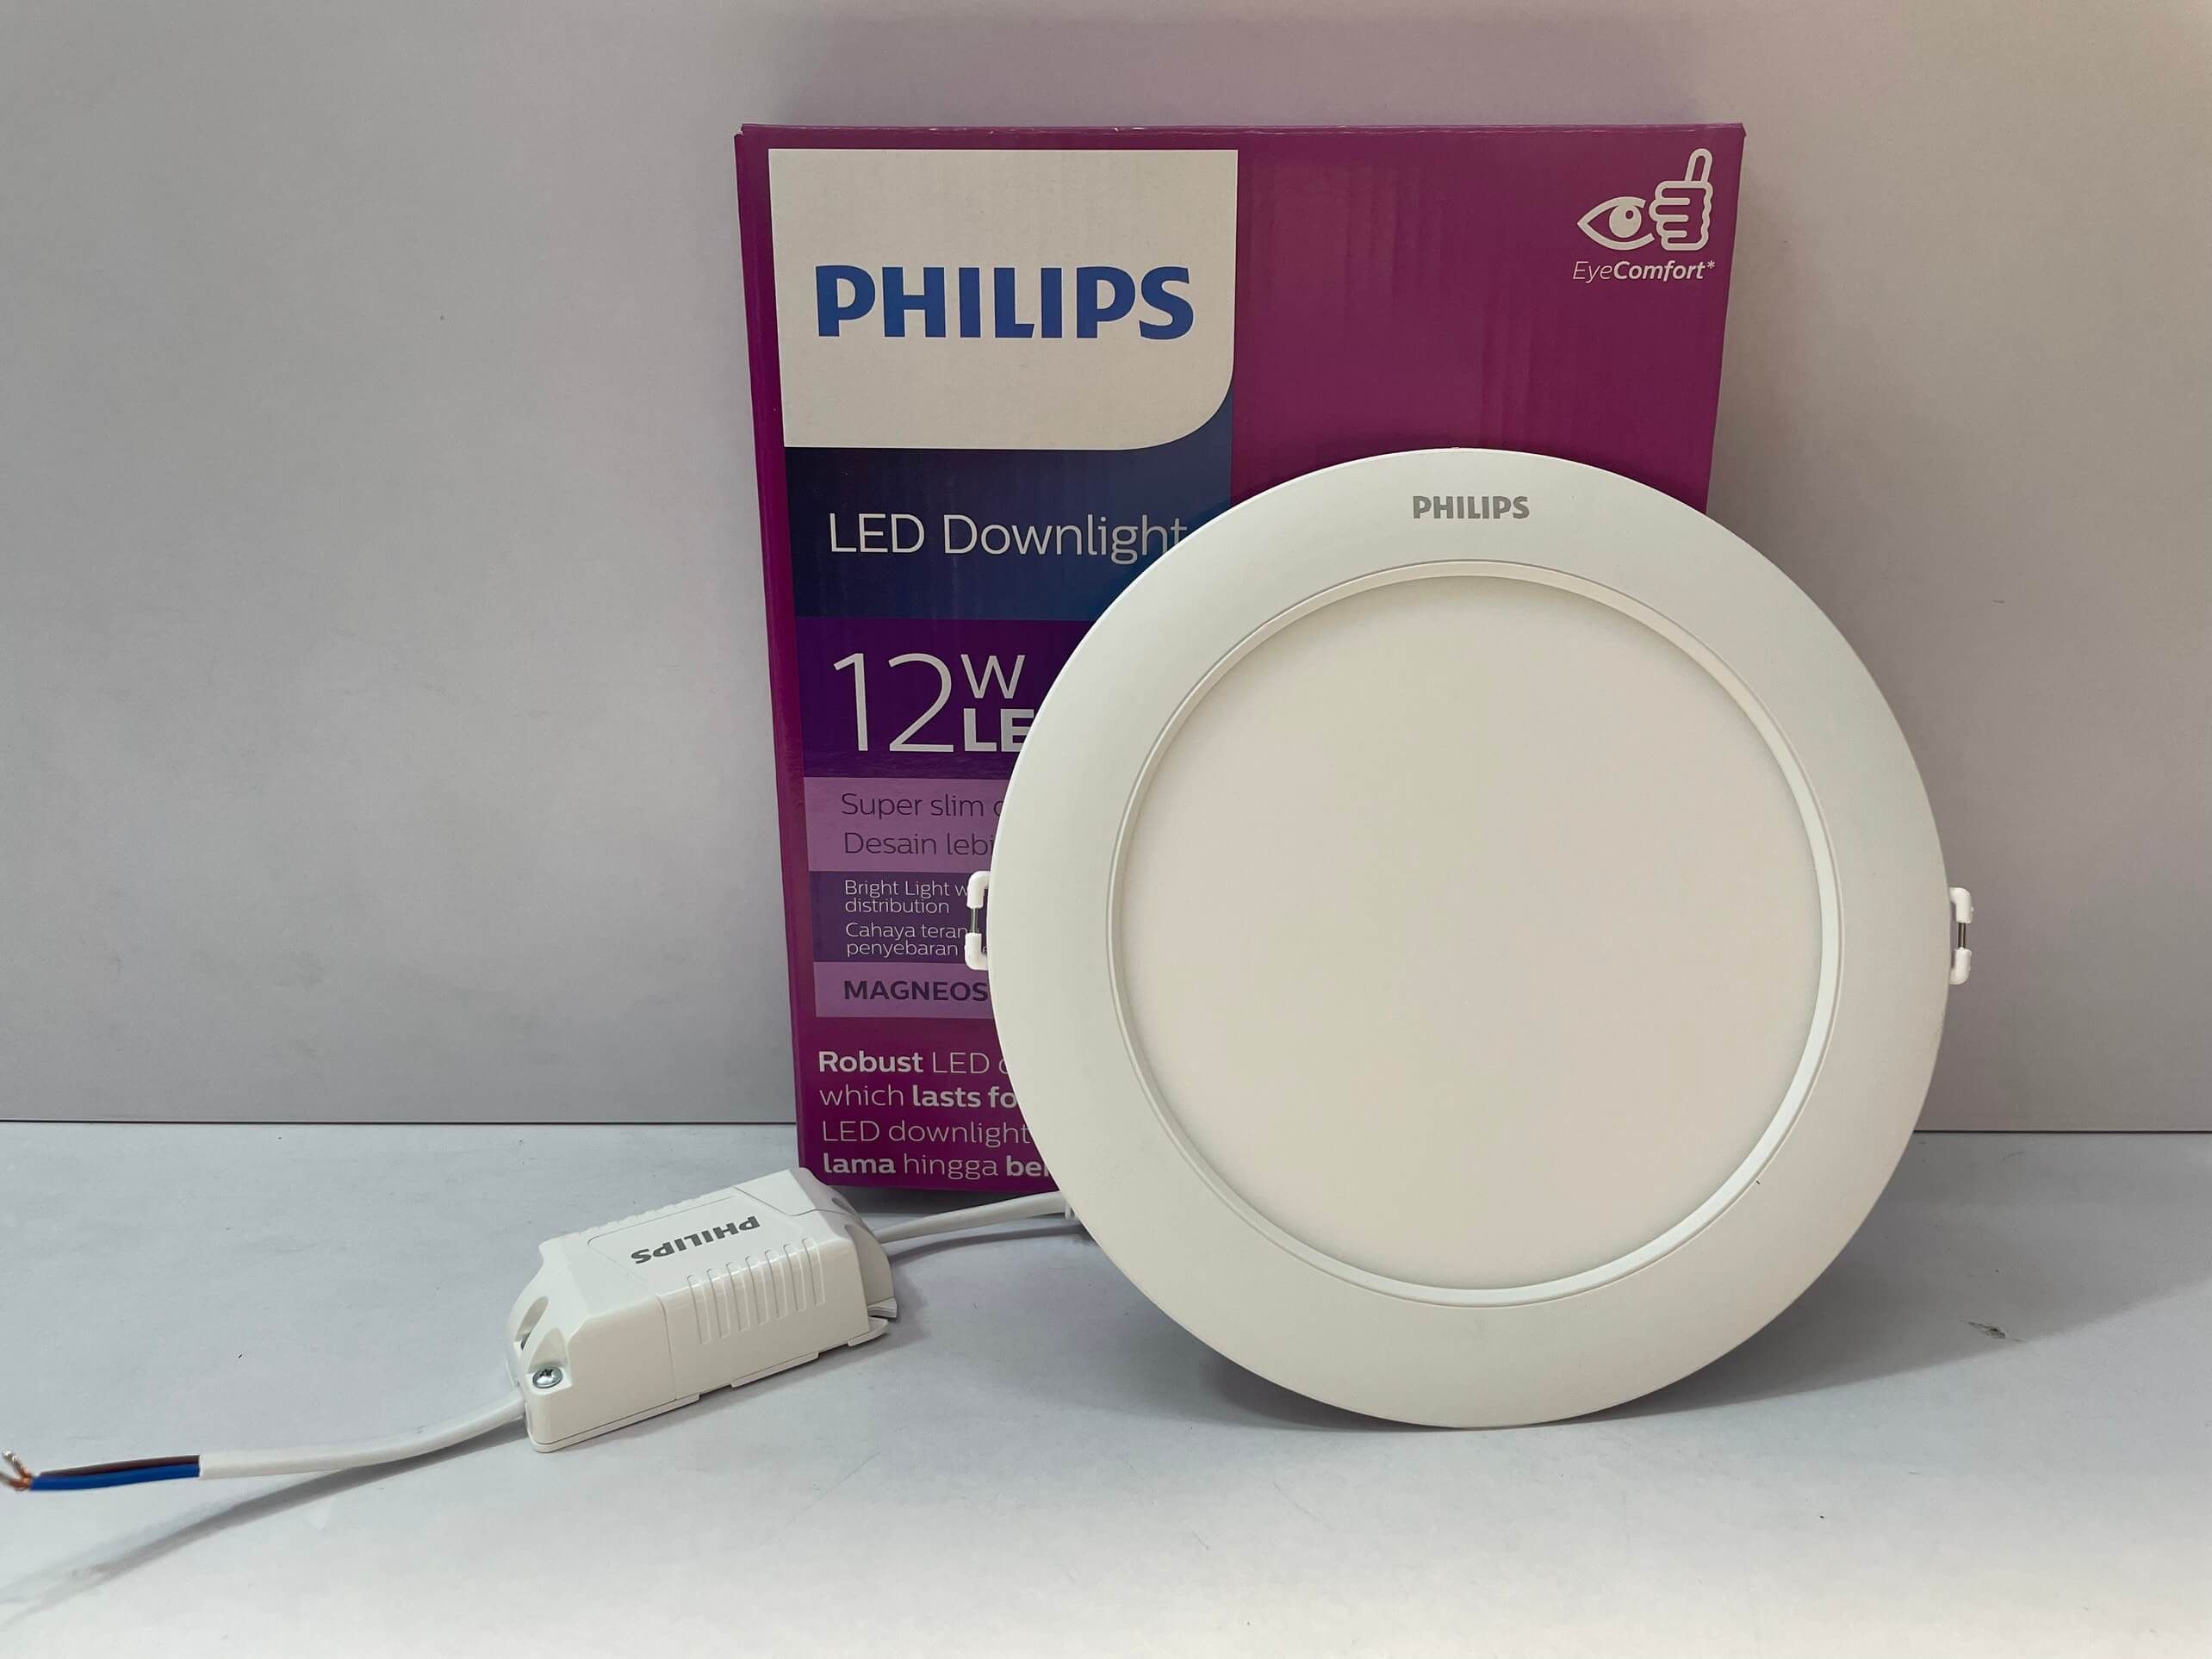 Bóng đèn LED âm trần thạch cao Philips - giải pháp chiếu sáng thông minh và hài lòng mọi khách hàng với độ sáng cao và tiết kiệm điện năng. Thiết kế độc đáo và đa dạng về màu sắc, bóng đèn LED âm trần thạch cao Philips sẽ mang lại vẻ đẹp và phong cách riêng cho không gian sống của bạn.